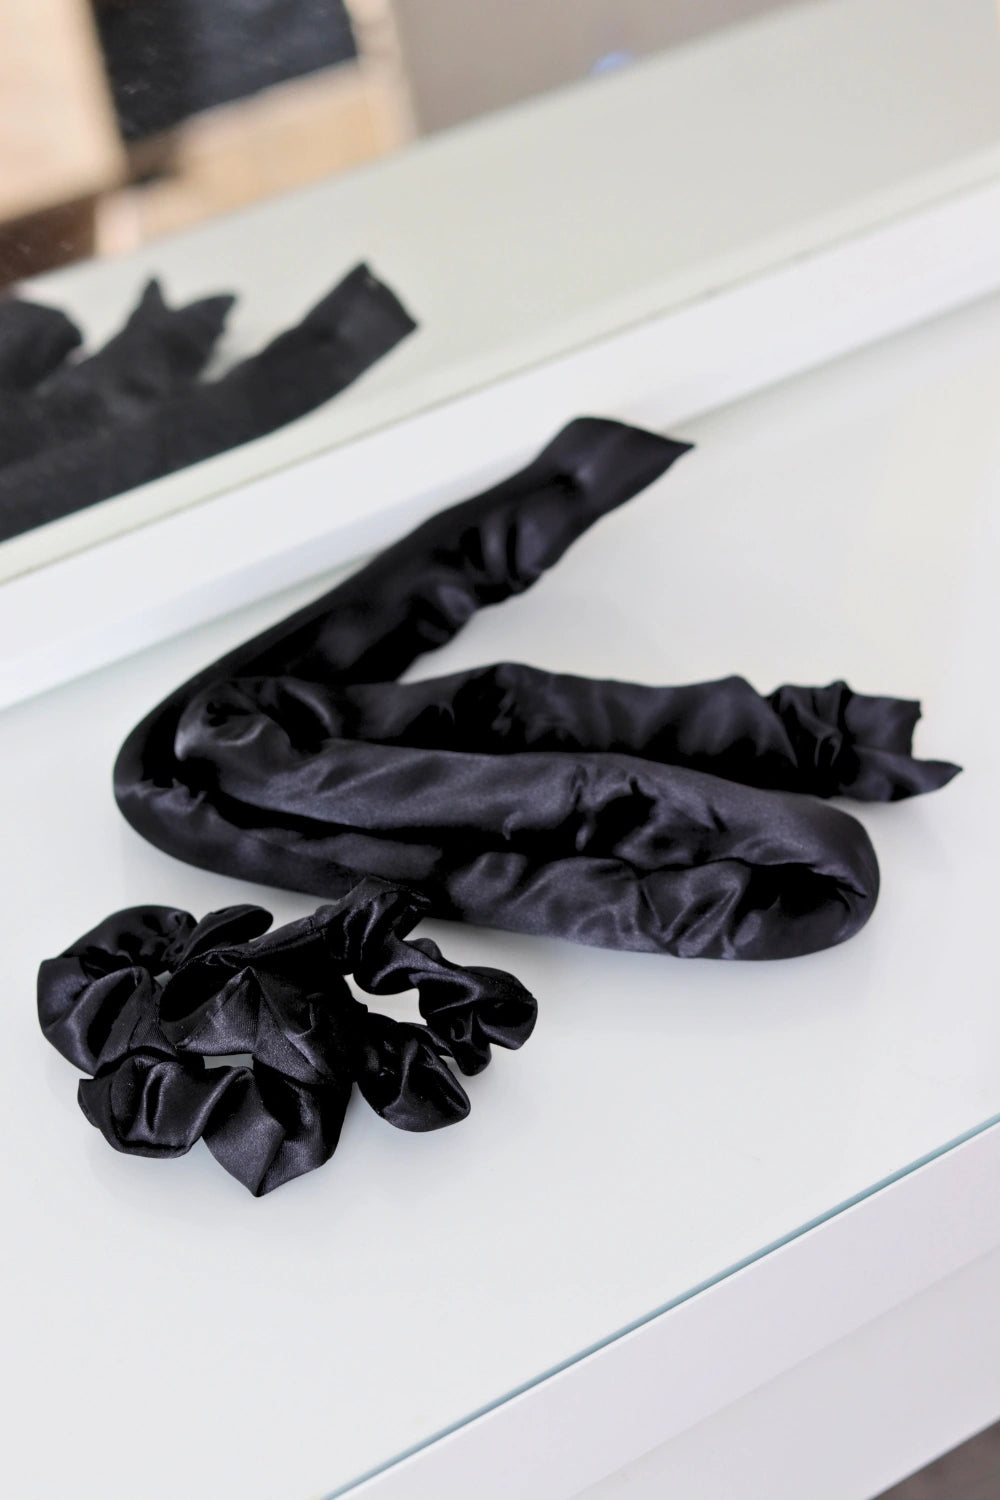 Musta heatless curler - hellävarainen lämmötön kiharrin hiuksille - hellävaraiset ja kestävät kiharat ilman lämpöä